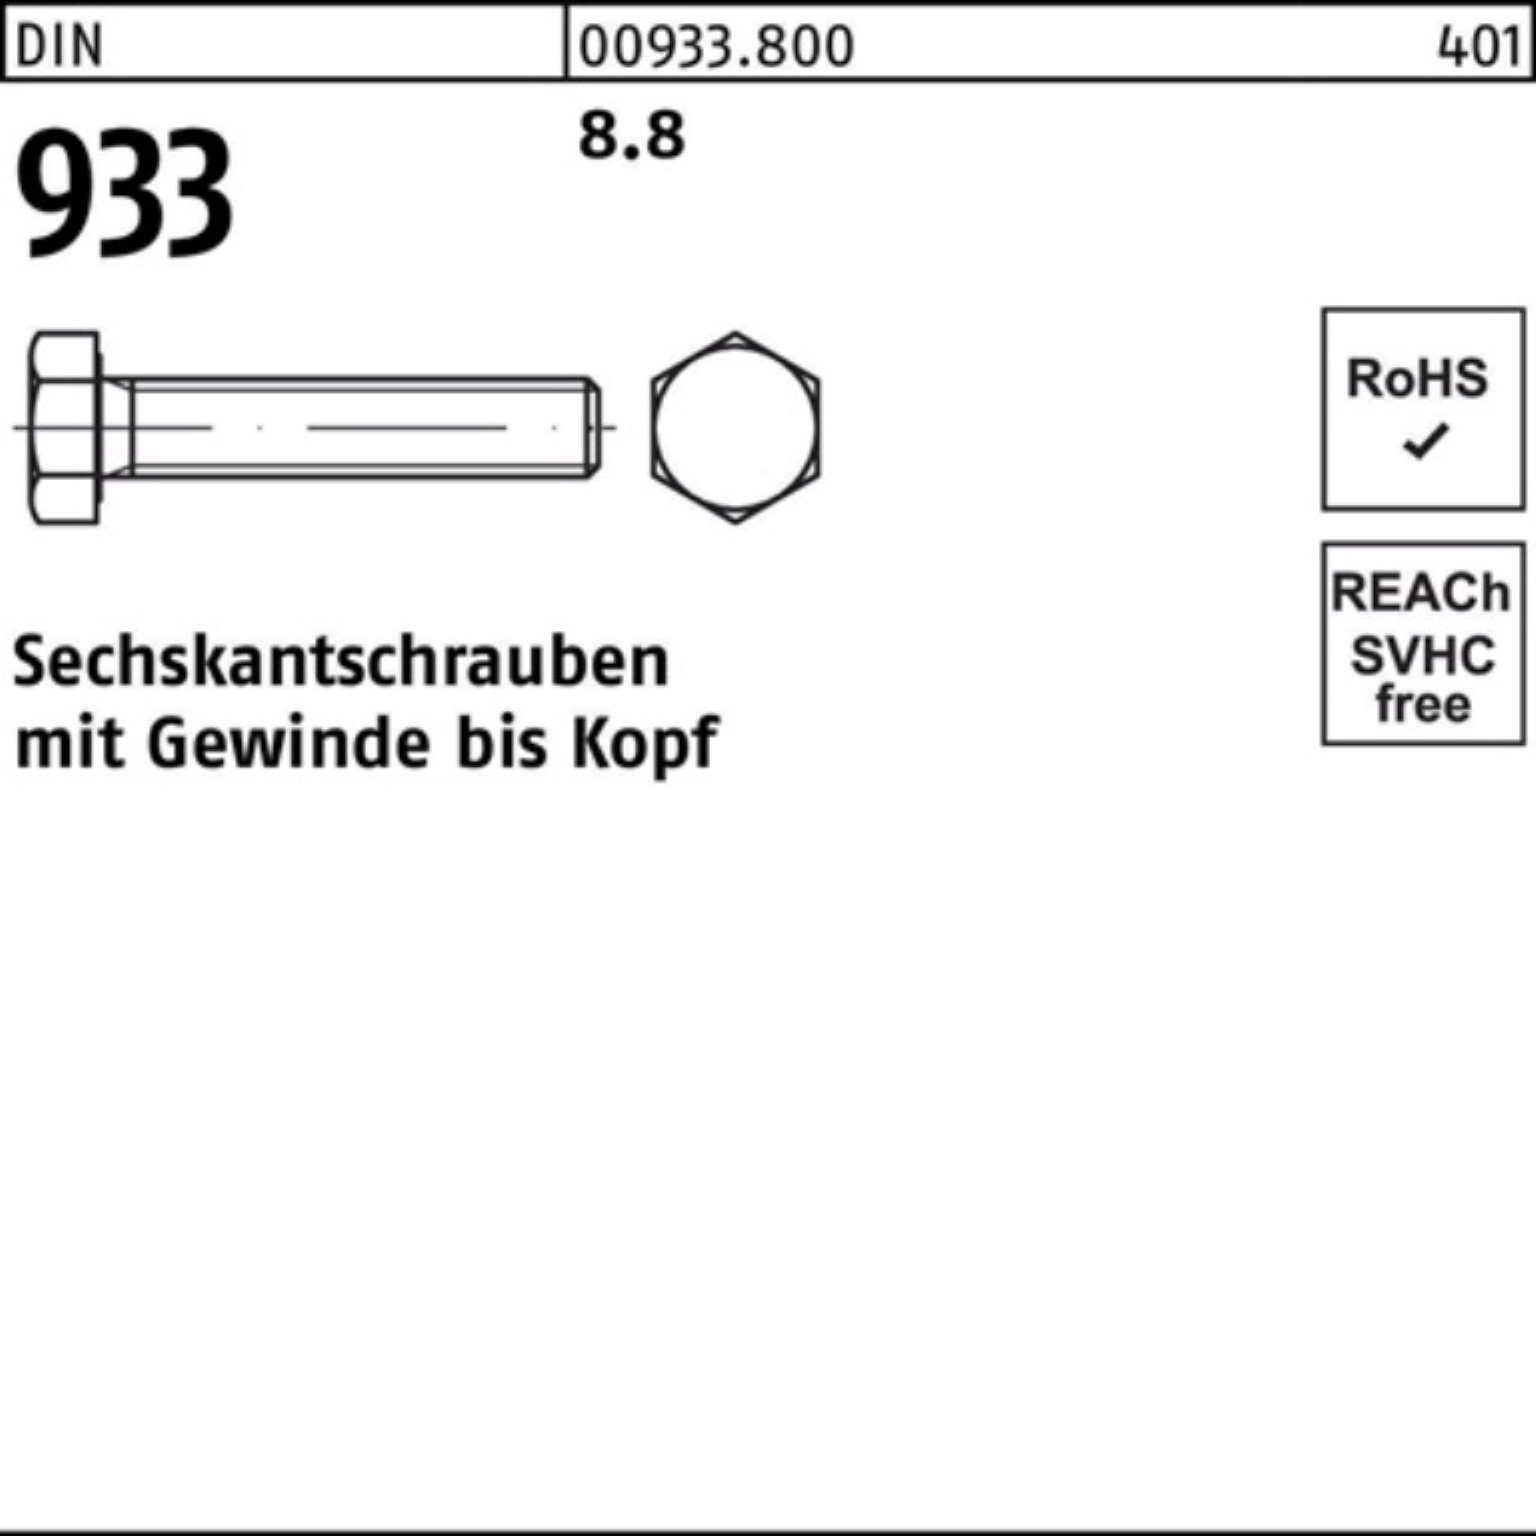 Pack Sechskantschraube 933 100 Reyher 8.8 16 M5x 100er Stück DIN DIN 933 Sechskantschraube VG